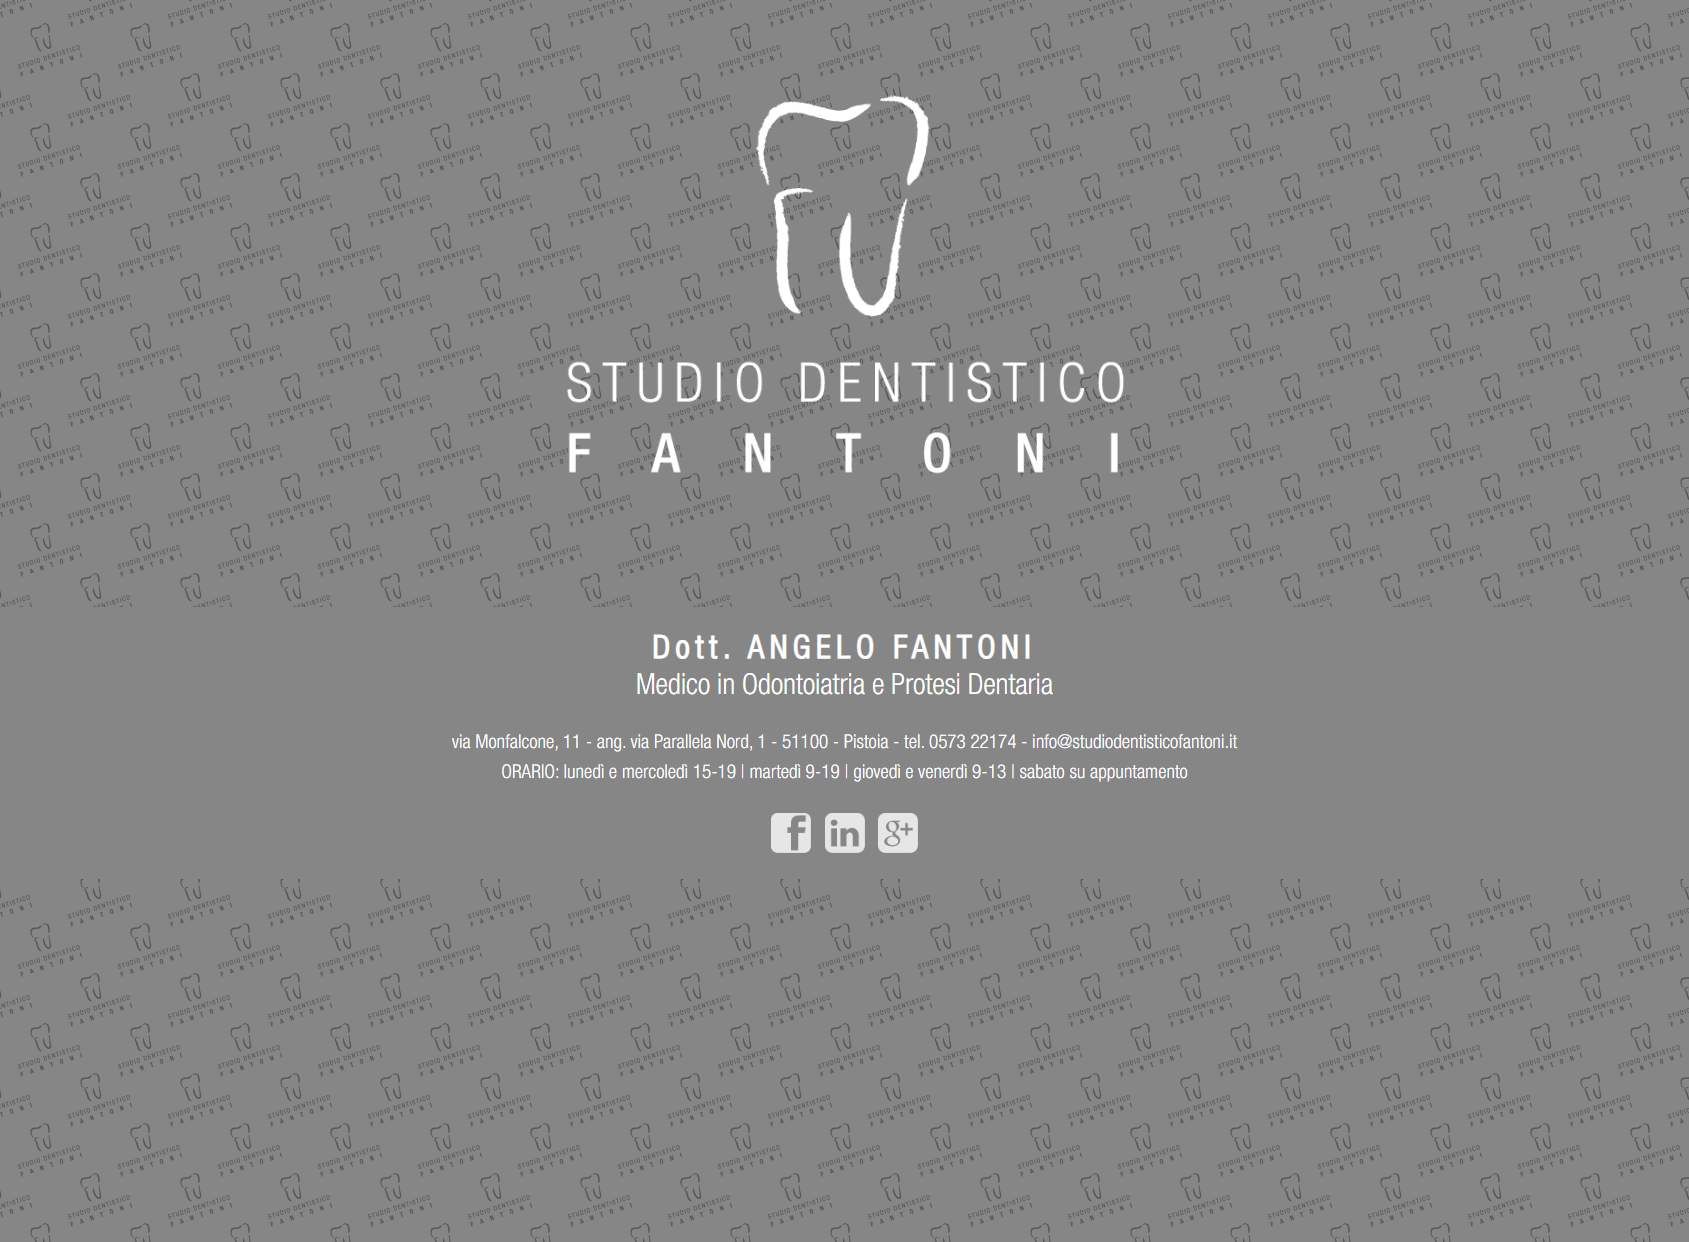 Studio Dentistico Fantoni